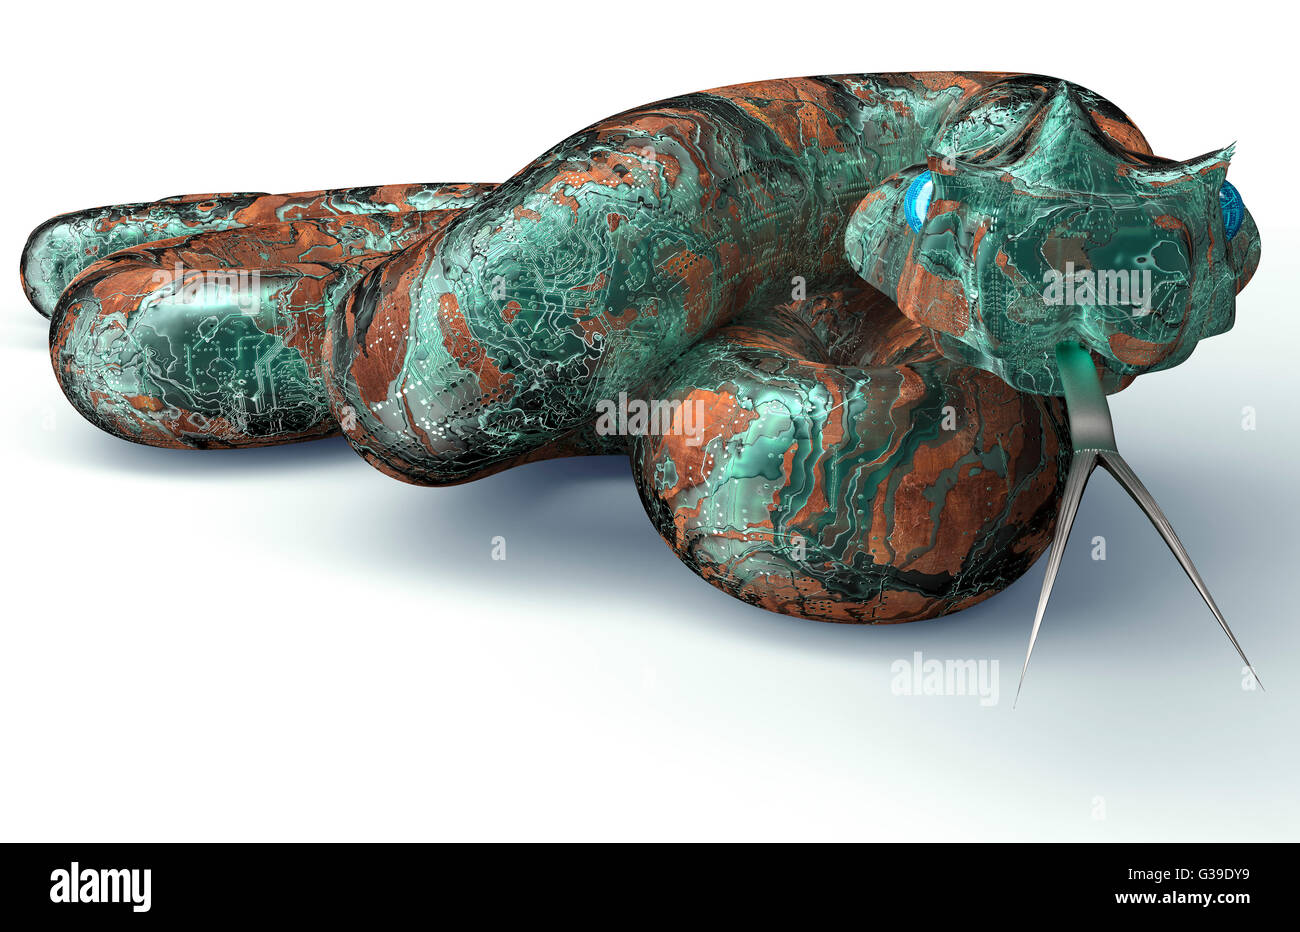 Concept de sécurité numérique ordinateur électronique isolé serpent, 3D illustration Banque D'Images